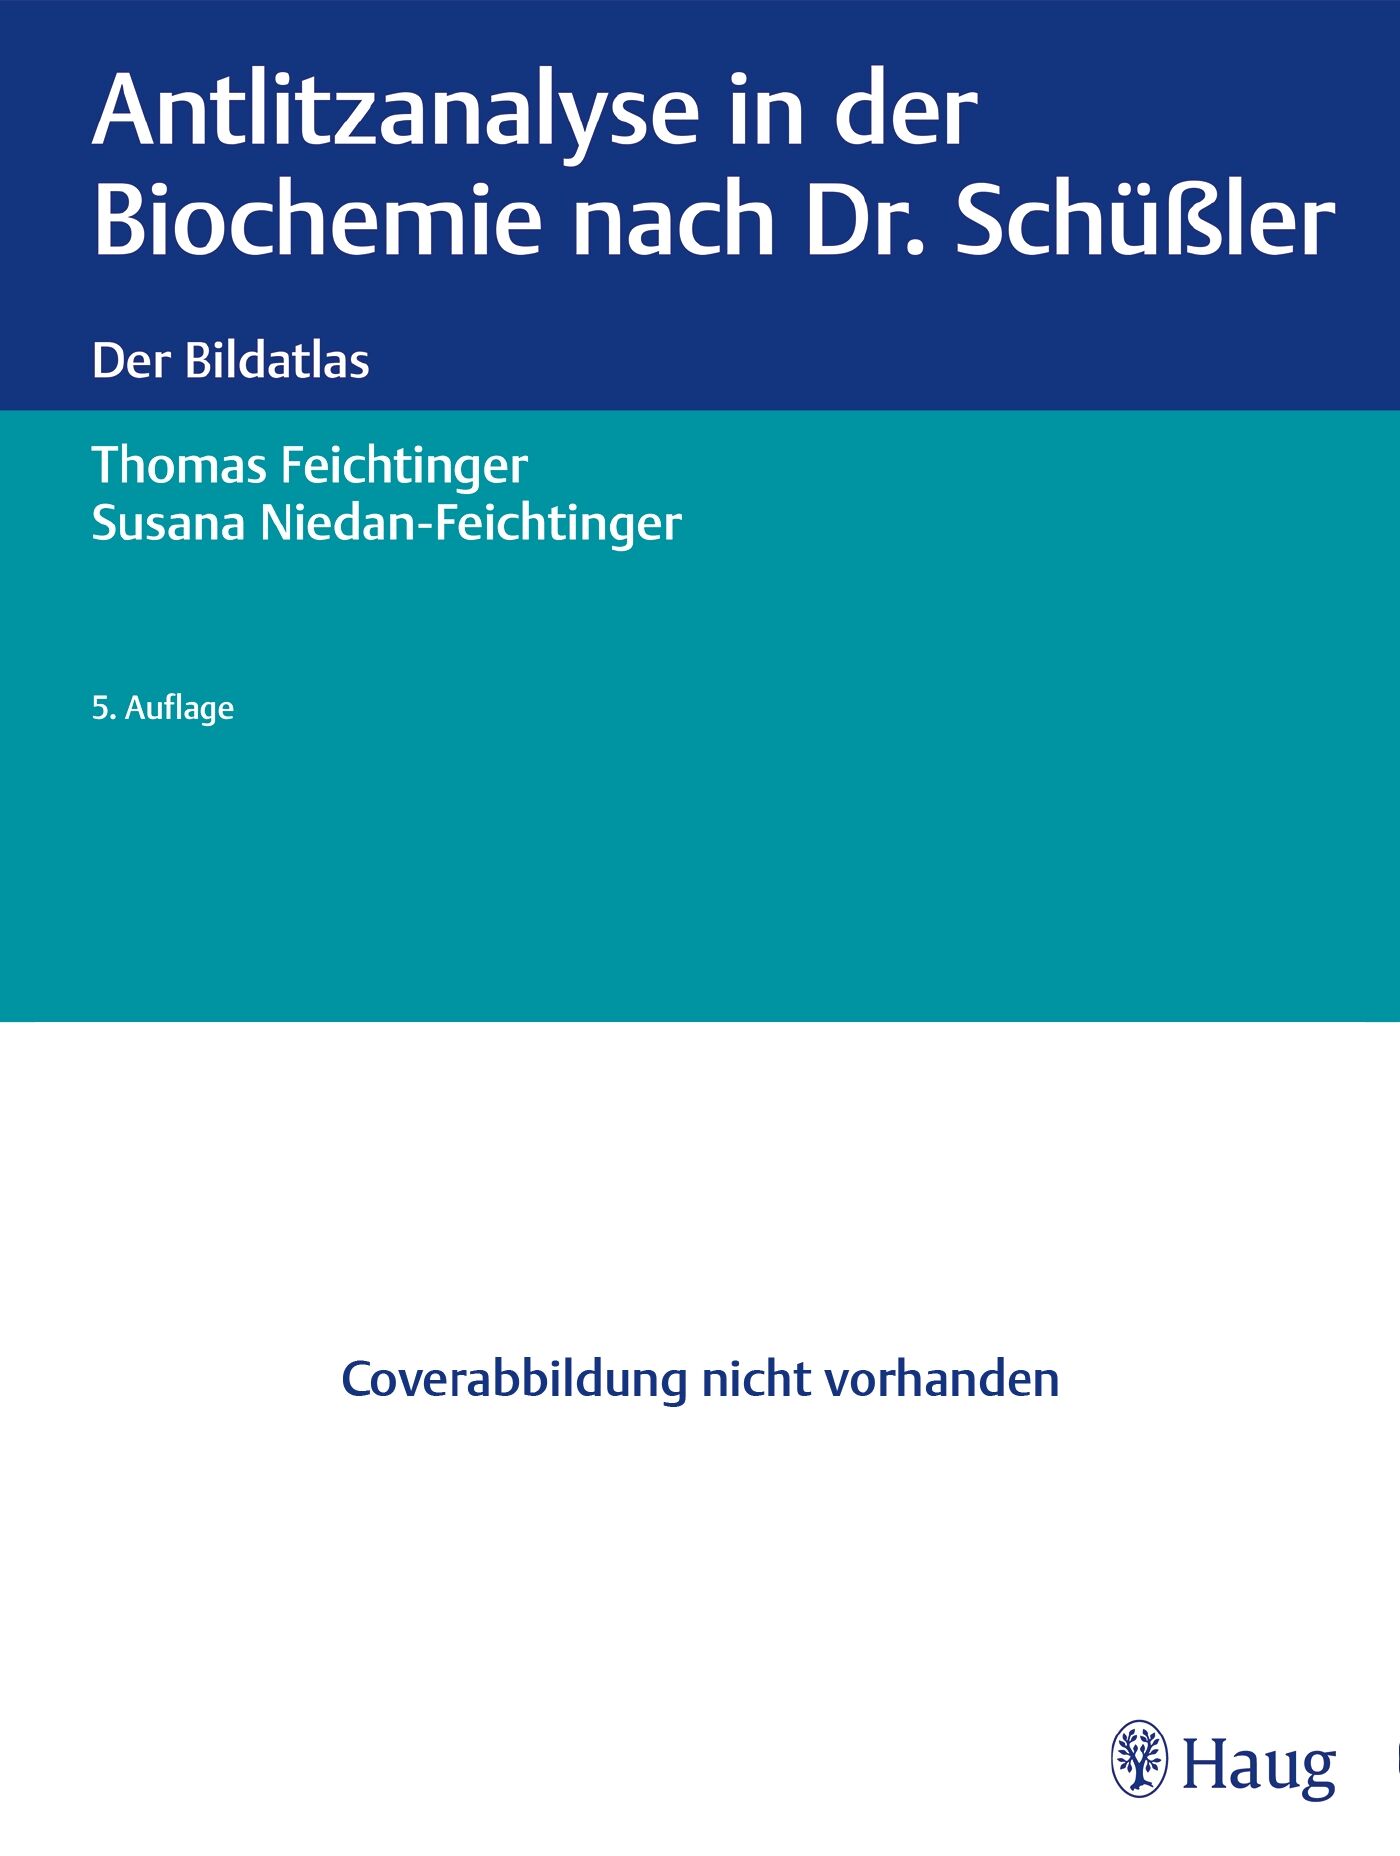 Antlitzanalyse in der Biochemie nach Dr. Schüßler, 9783132419131